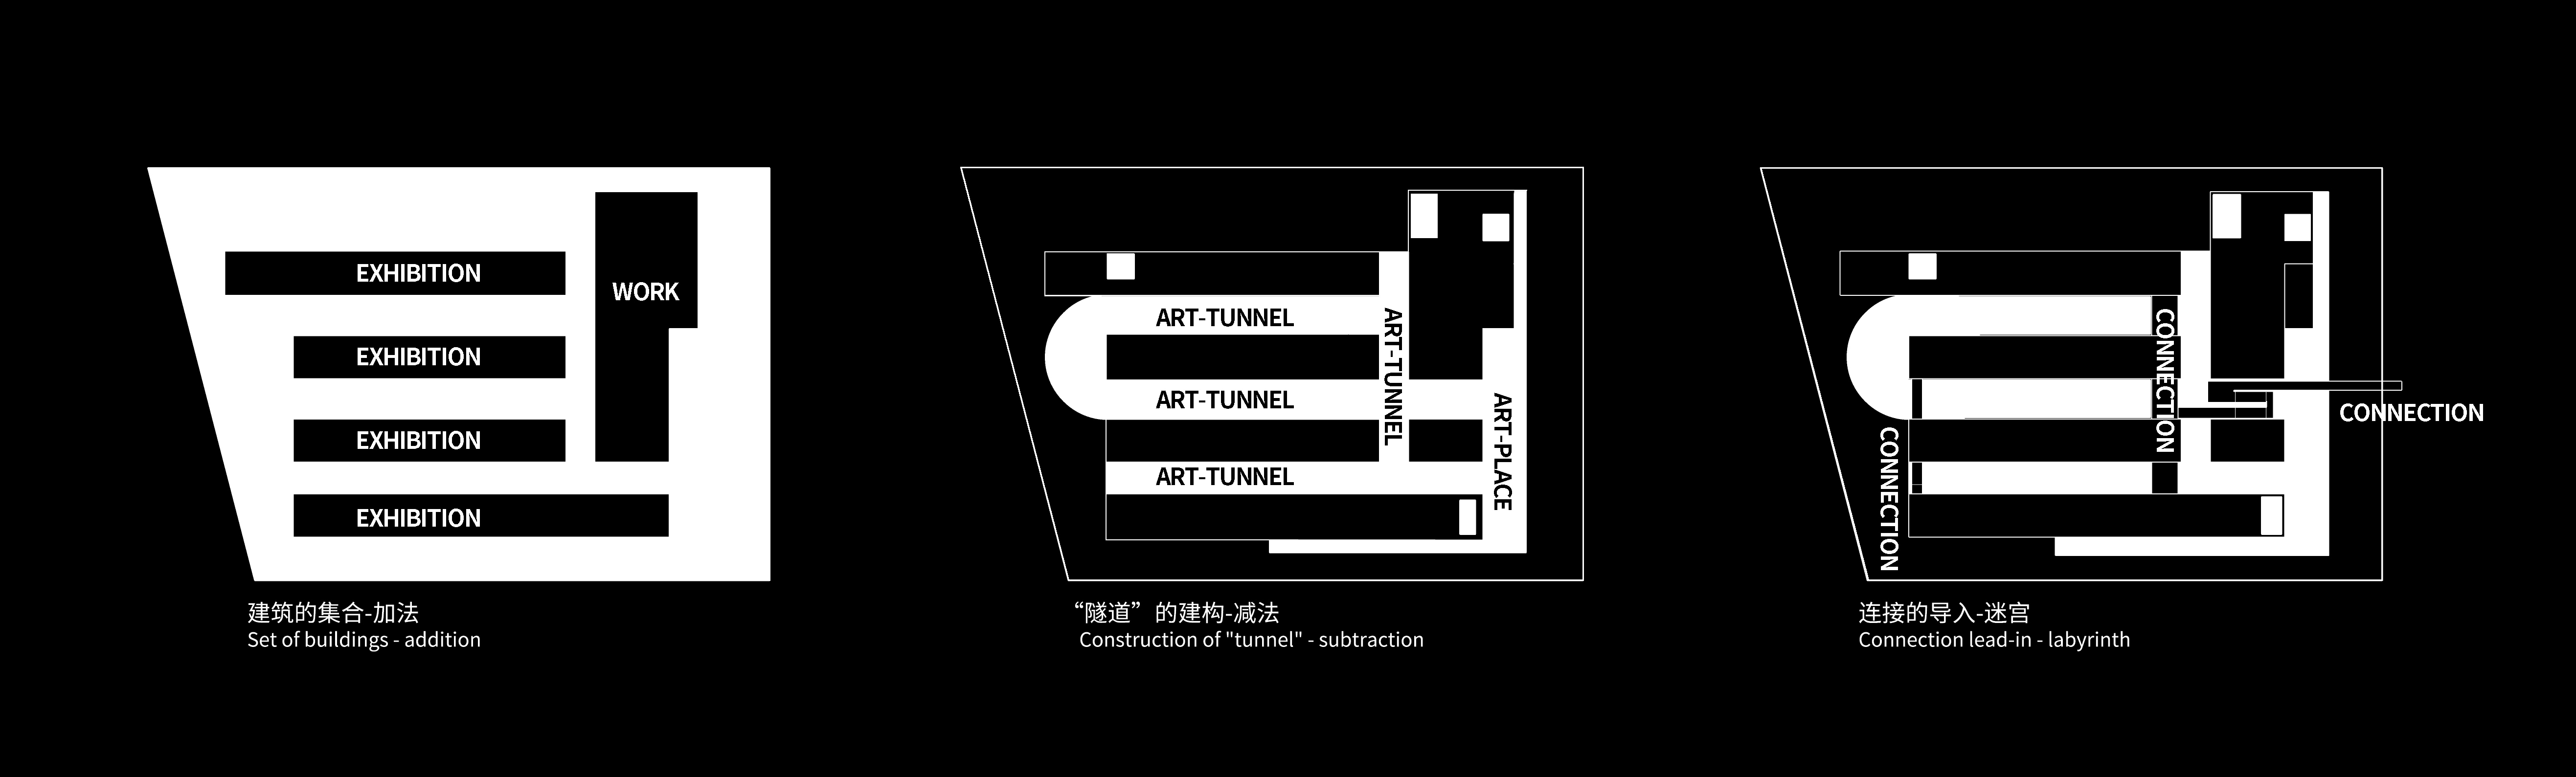 北京 运河美术馆 建筑设计 / 普罗建筑